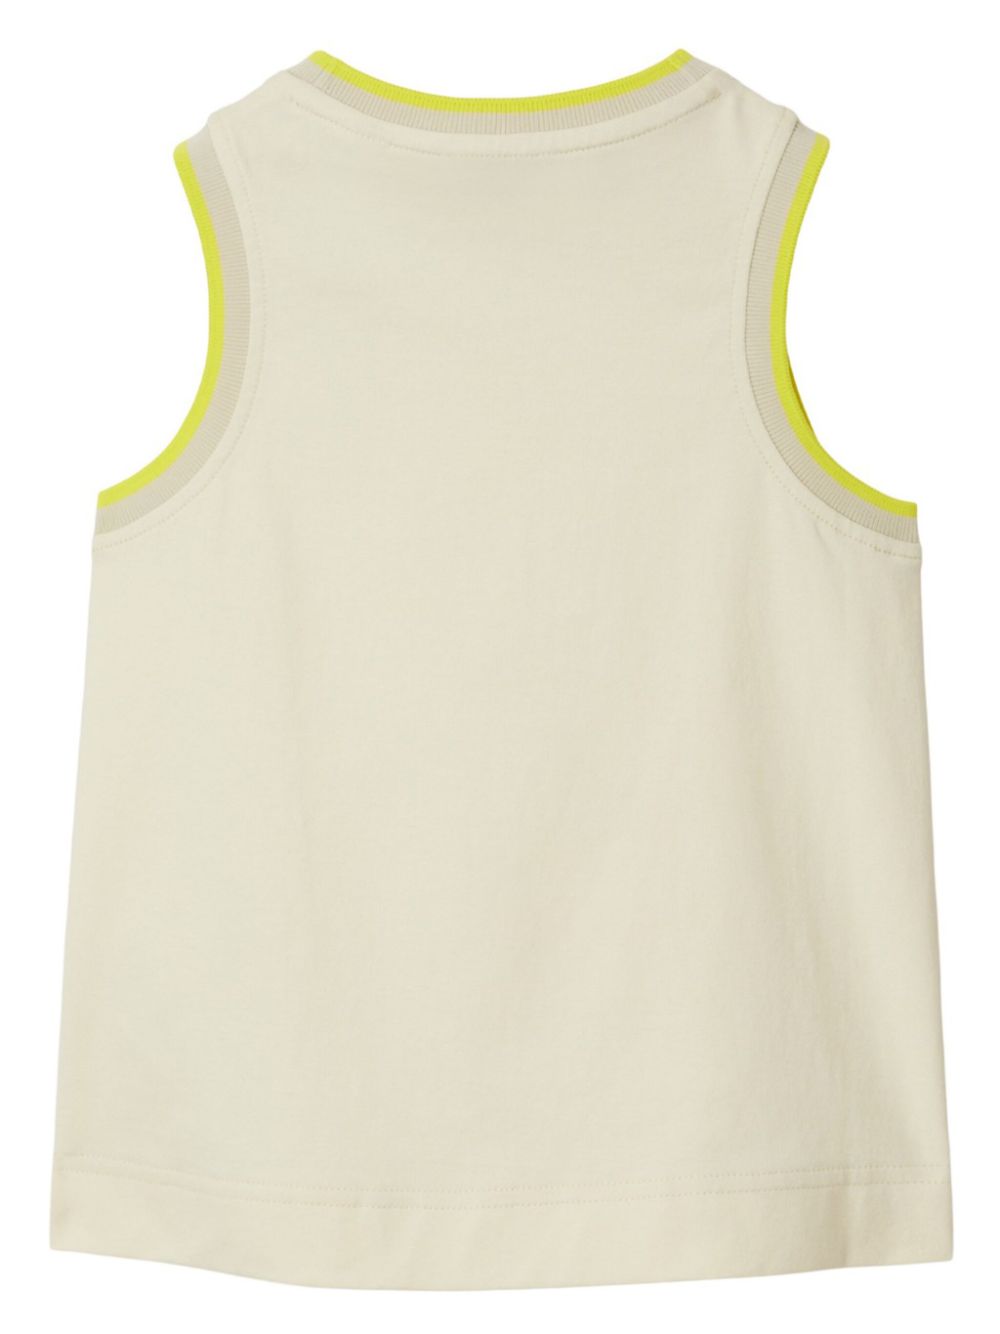 Logo-embroidered cotton vest<BR/><BR/><BR/>